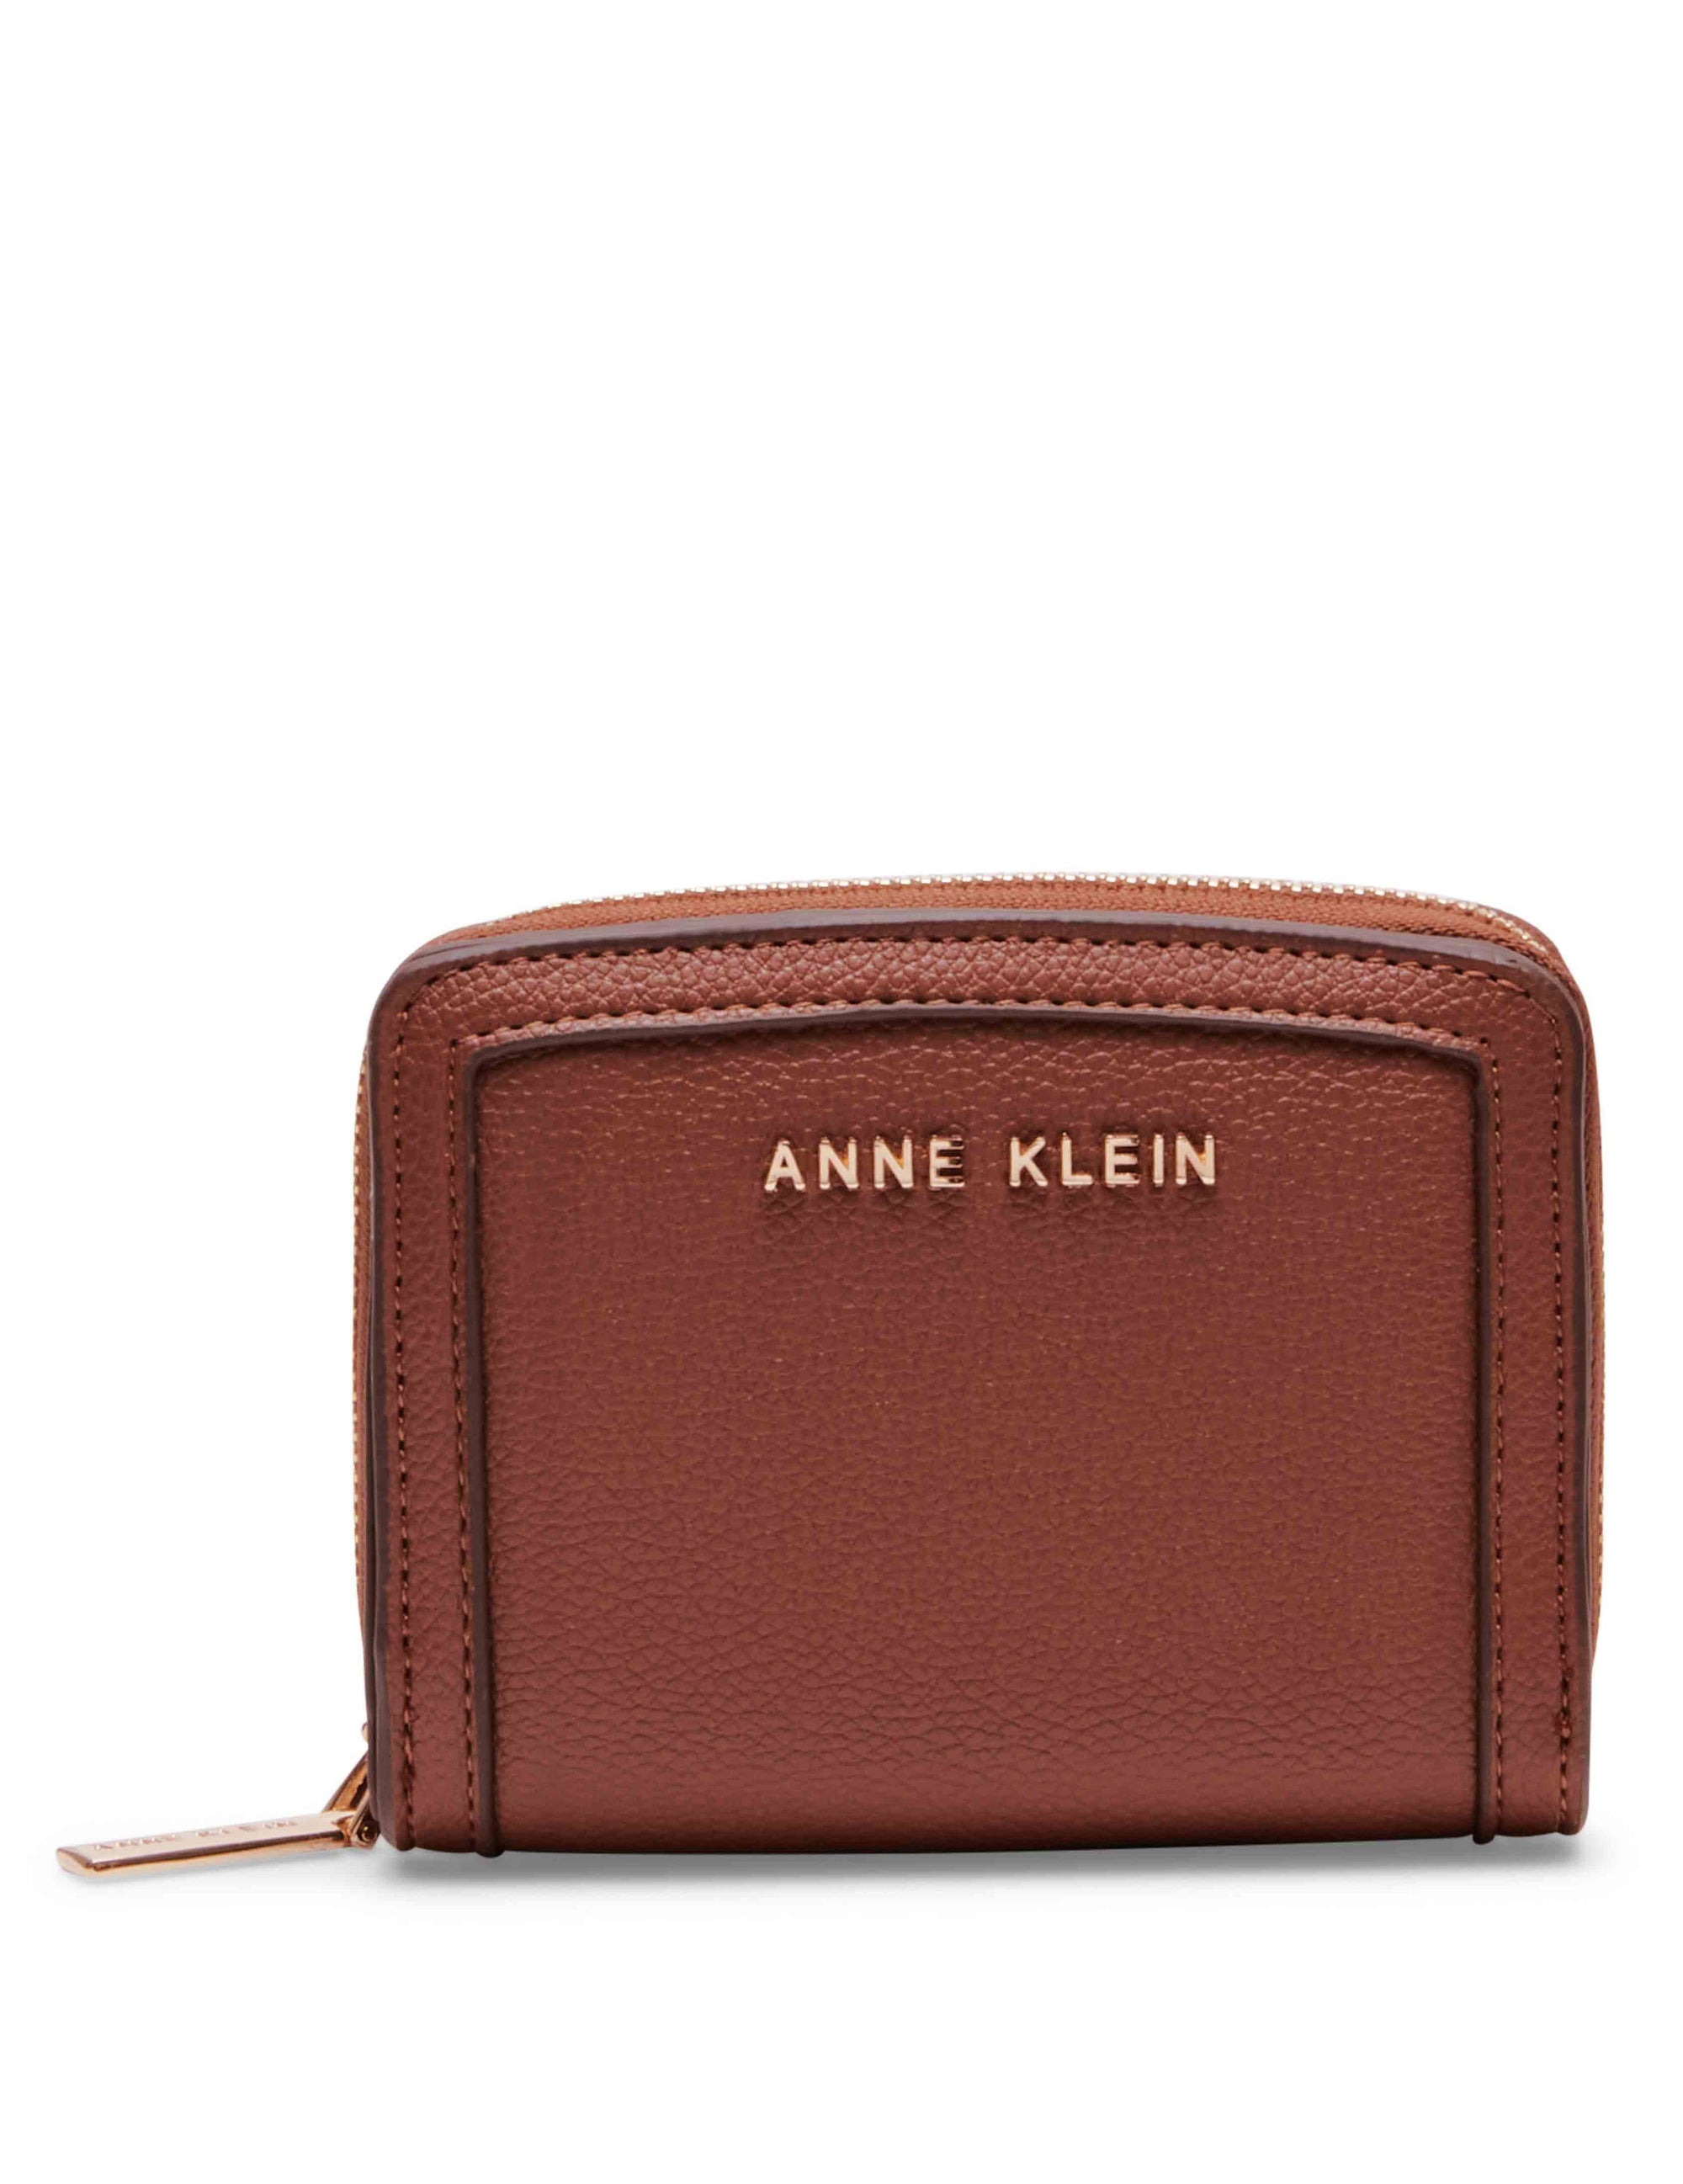 Anne Klein Red Satchel Bag Women | eBay